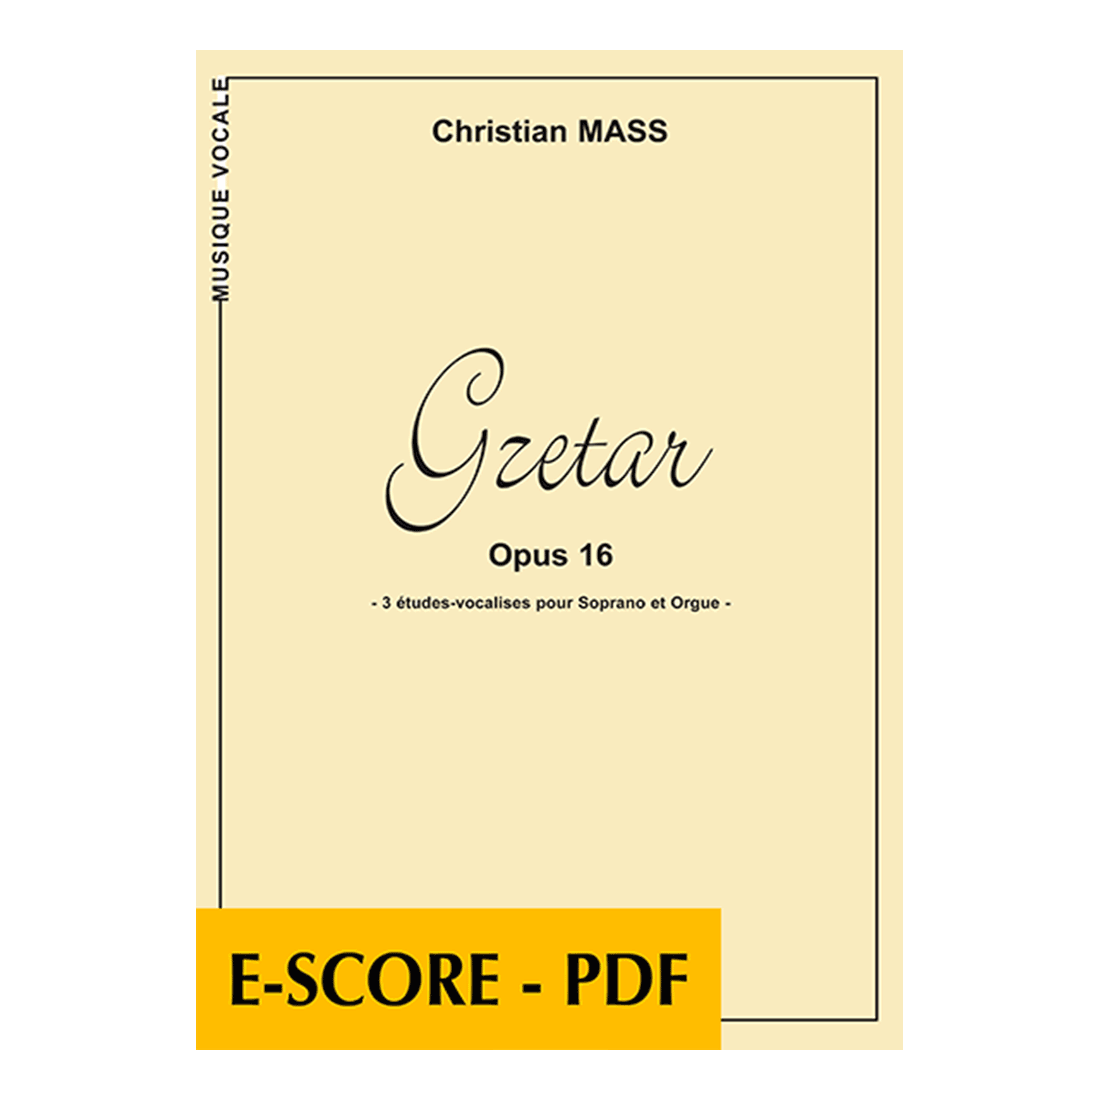 Gzetar für Tenor oder Sopran und Orgel - E-score PDF